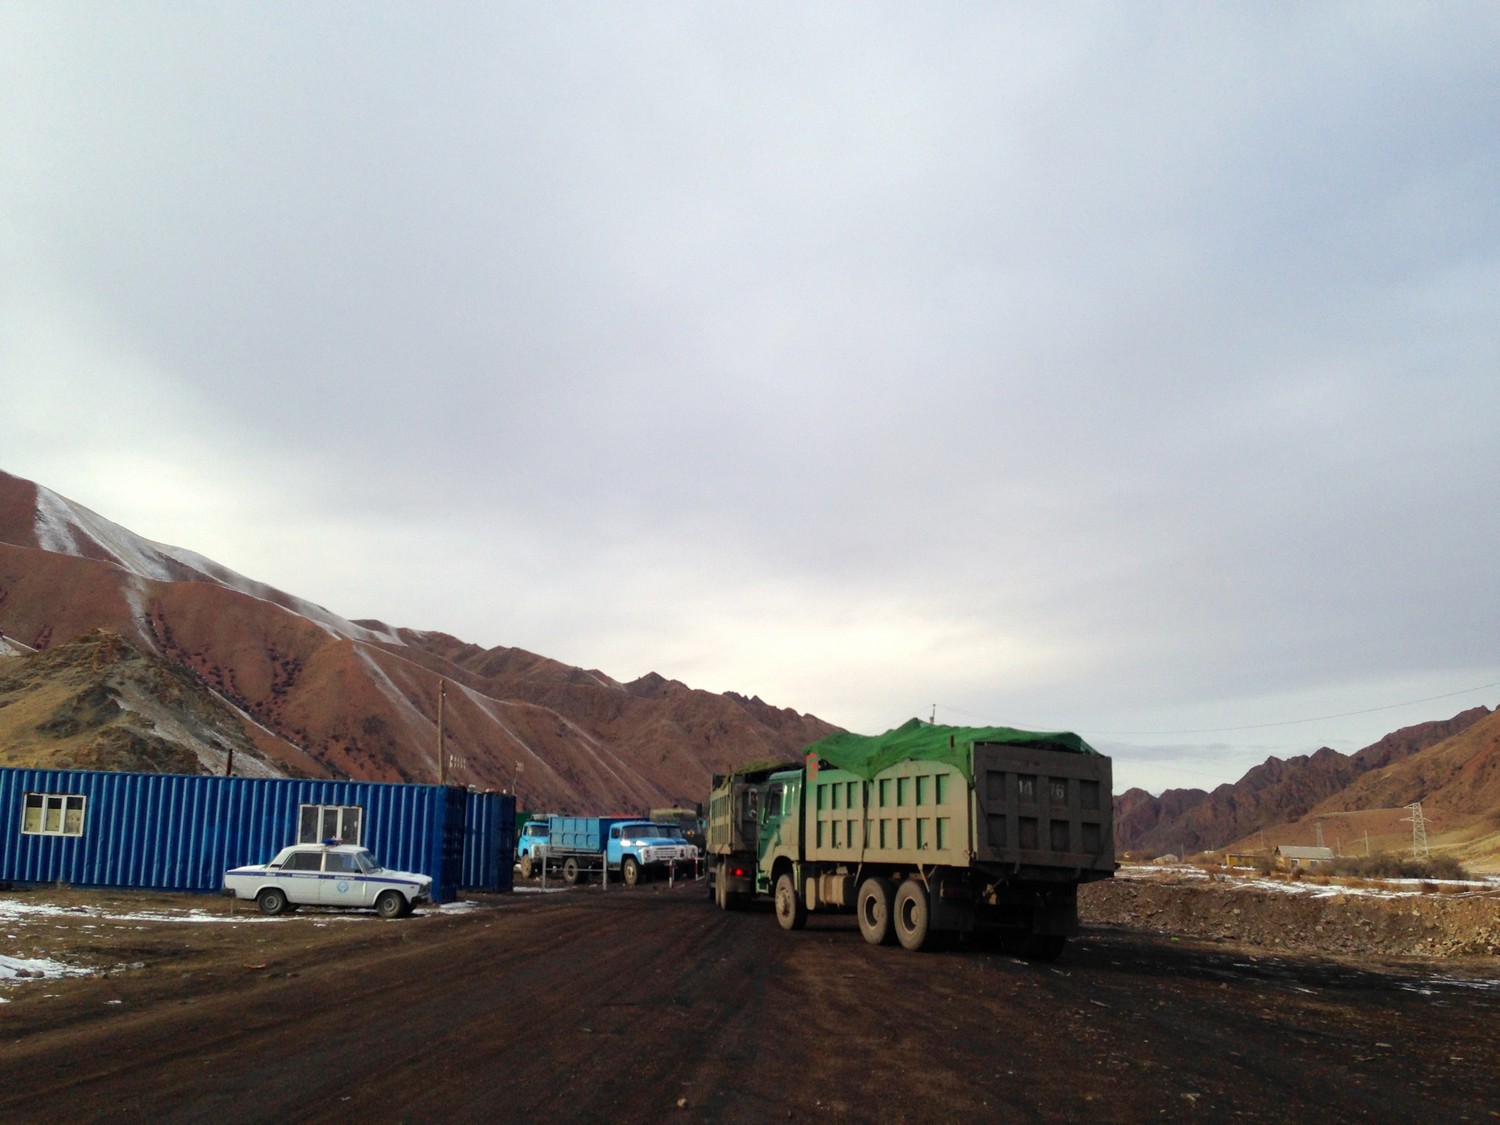 Le point de contrôle installé par la police sur la route vers la mine de Kara-Keché permet de réguler le nombre de camions et d'empêcher les petits véhicules d'aller se procurer du charbon - Crédit : Anatole Douaud